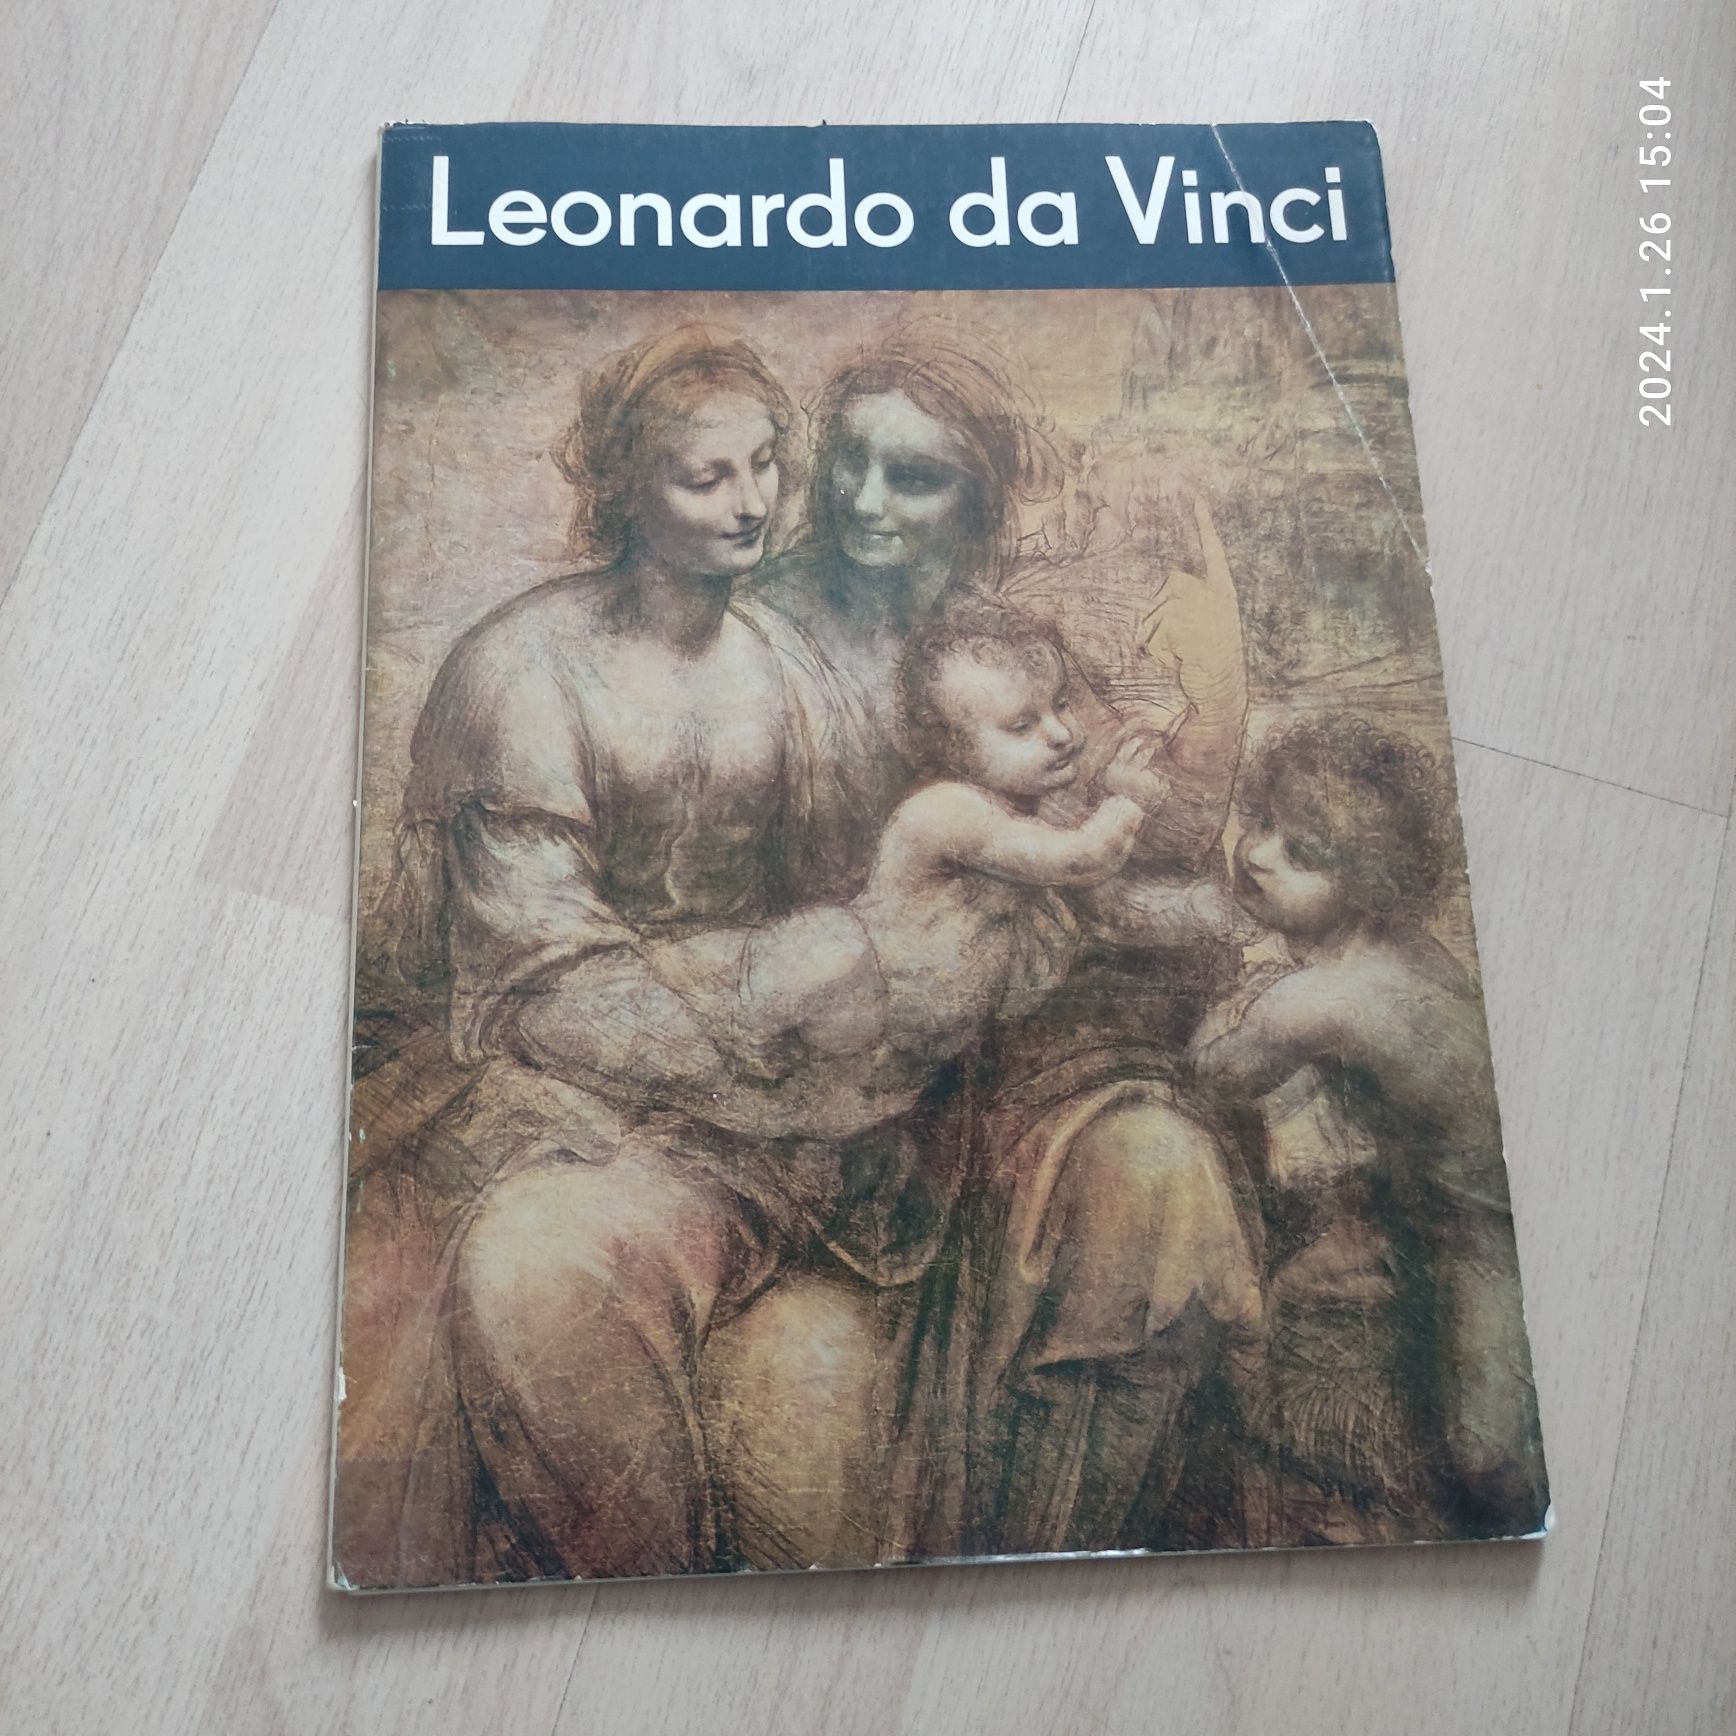 Леонардо да Винчи. Альбом с репродукциями.